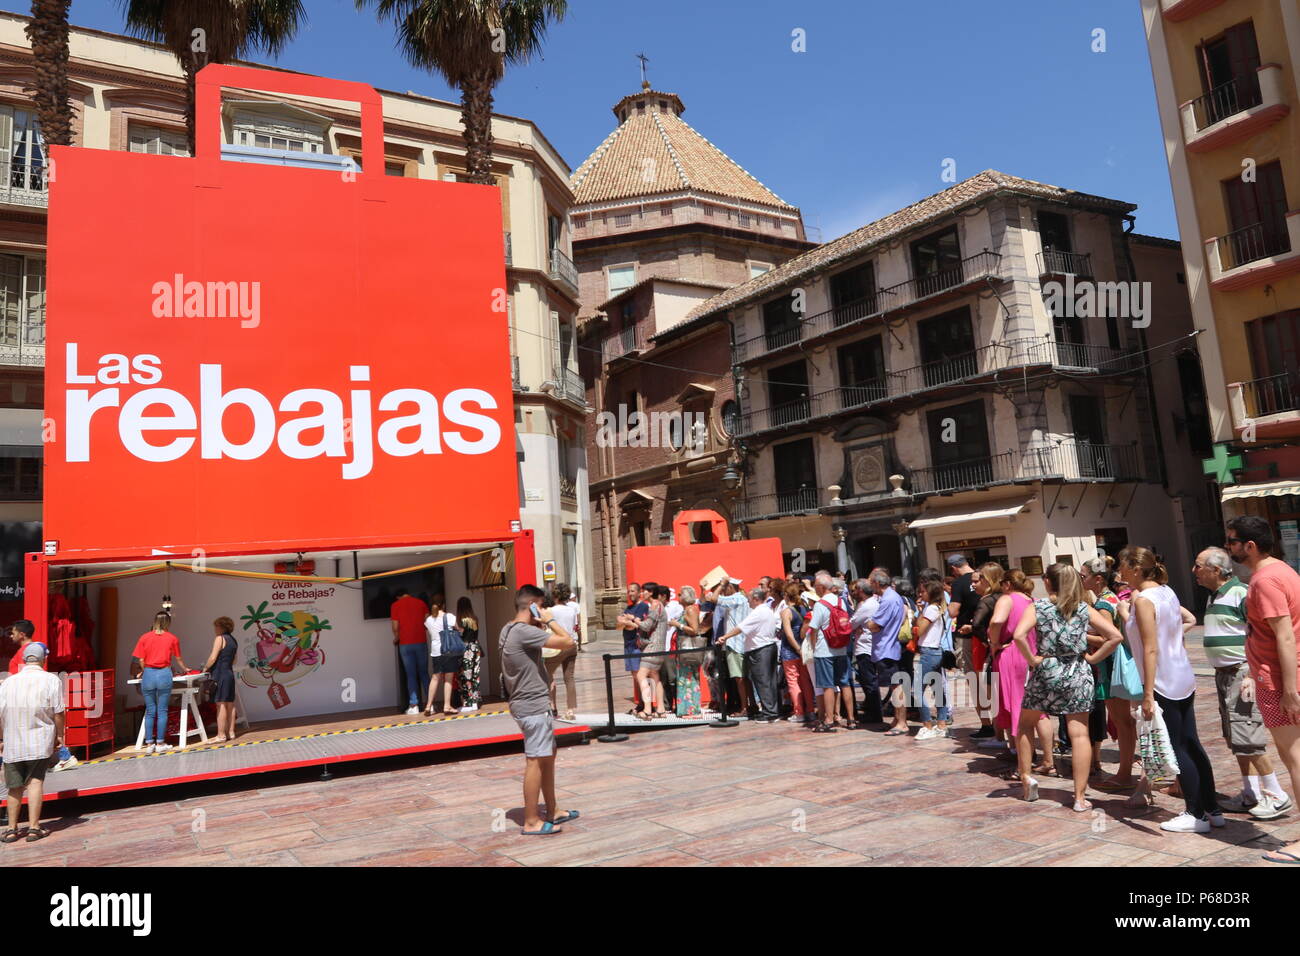 Junio 28, 2018 - Junio 28 (Málaga) El Corte Ingles presenta su campaña de  ventas de verano en Málaga.La compañía ha elegido la ciudad de Málaga para  presentar esta campaña de rebajas